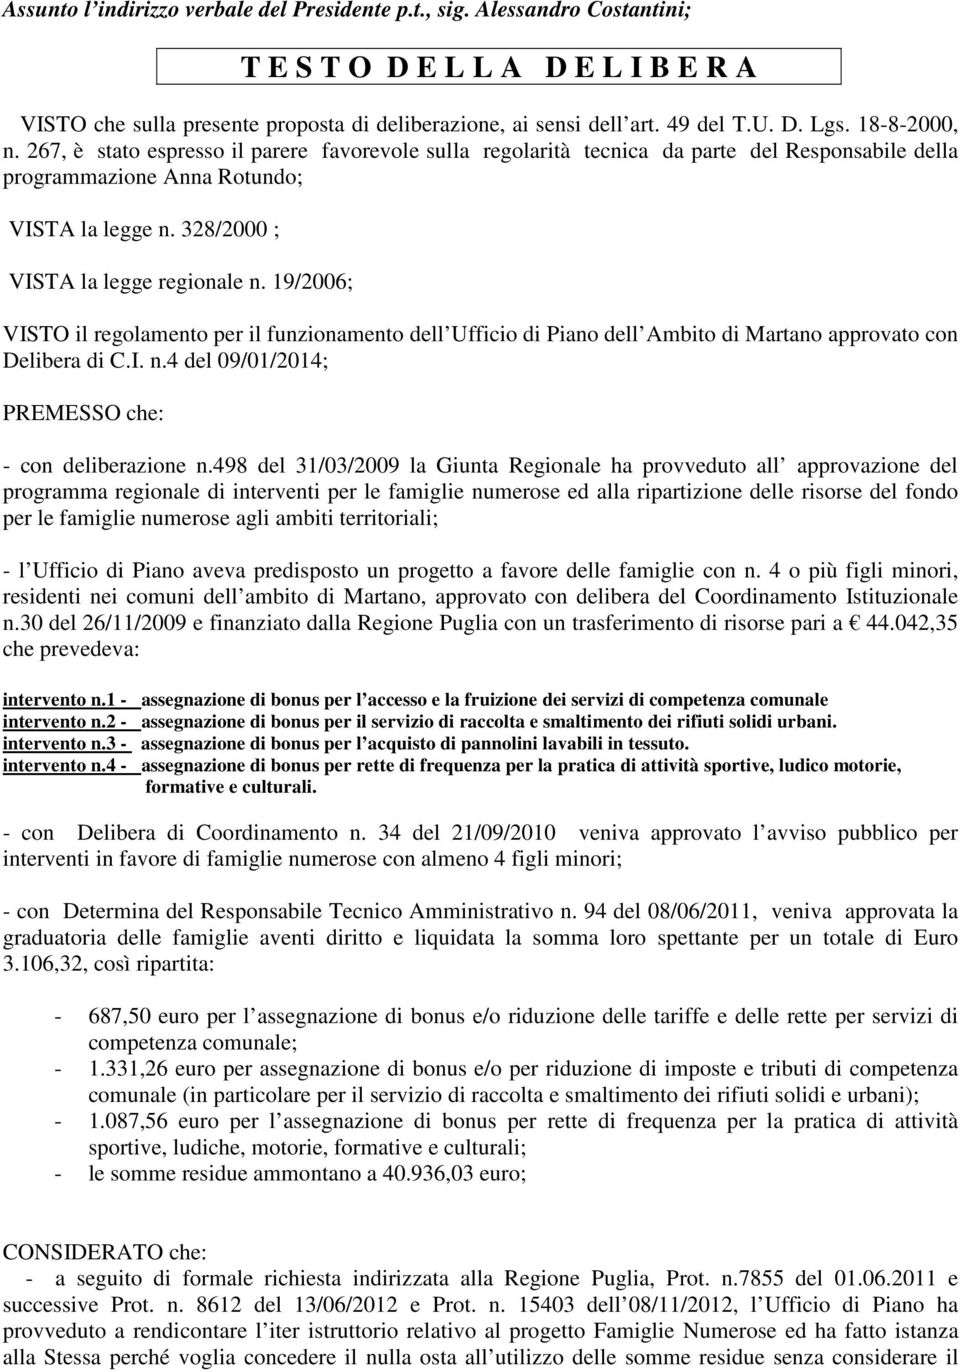 19/2006; VISTO il regolamento per il funzionamento dell Ufficio di Piano dell Ambito di Martano approvato con Delibera di C.I. n.4 del 09/01/2014; PREMESSO che: - con deliberazione n.